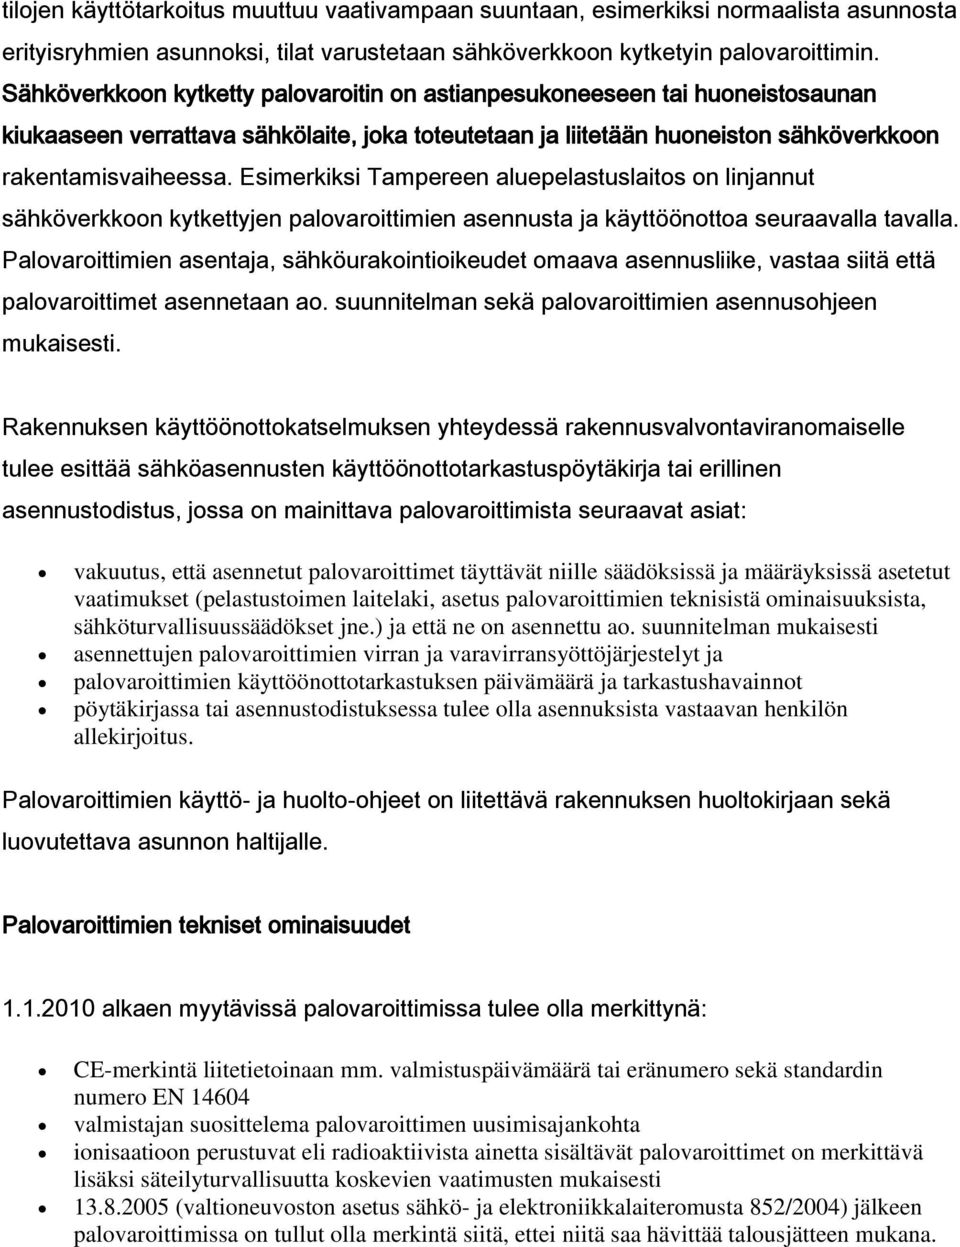 Esimerkiksi Tampereen aluepelastuslaitos on linjannut sähköverkkoon kytkettyjen palovaroittimien asennusta ja käyttöönottoa seuraavalla tavalla.